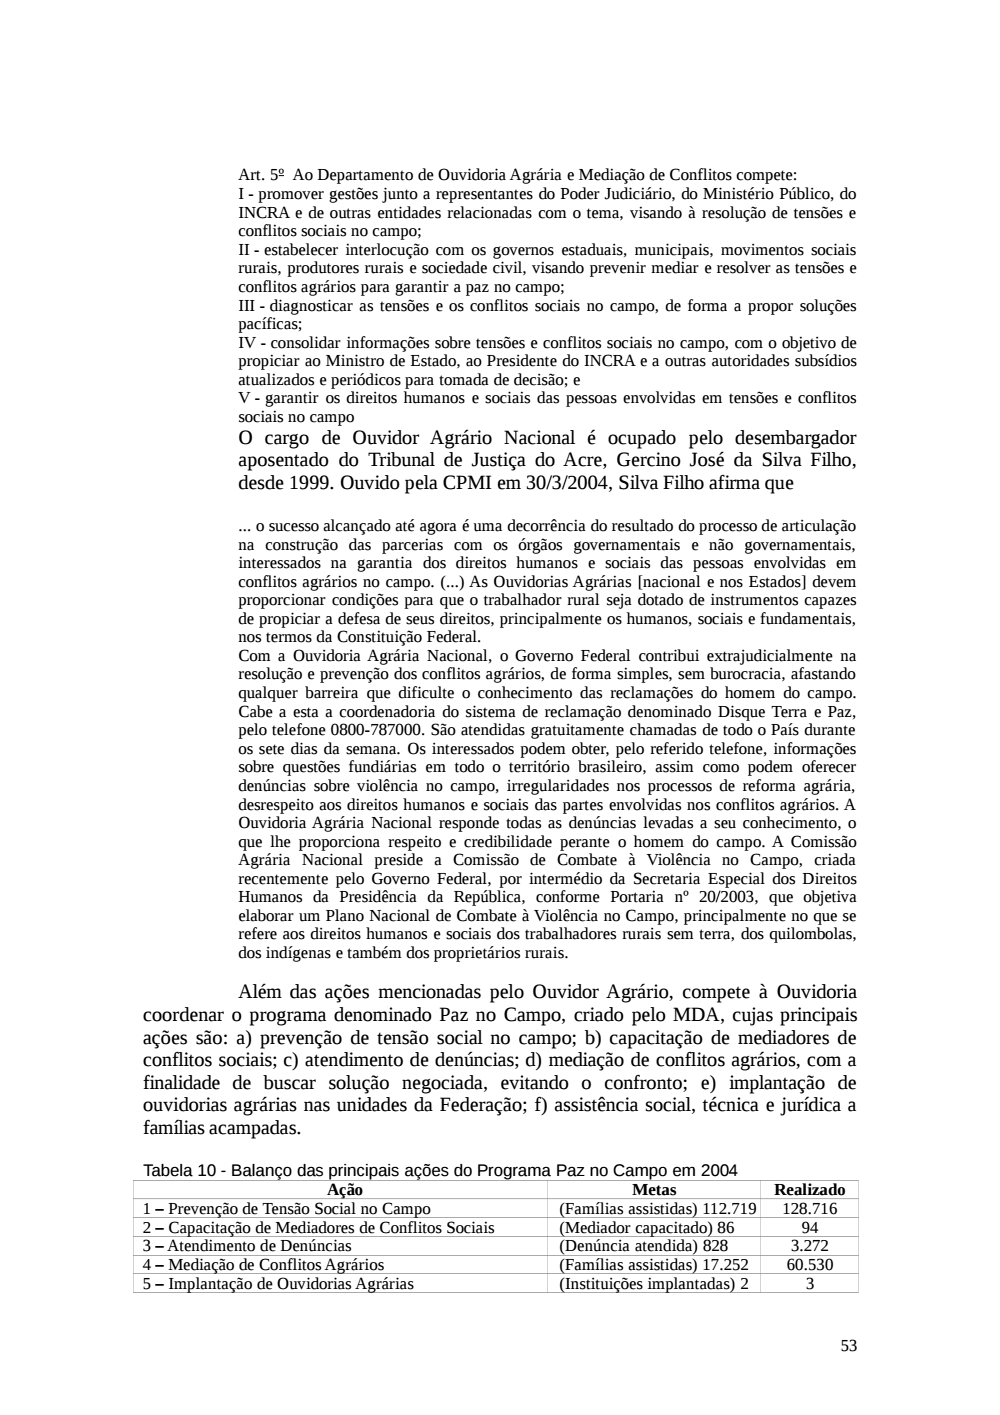 Page 53 from Relatório final da comissão